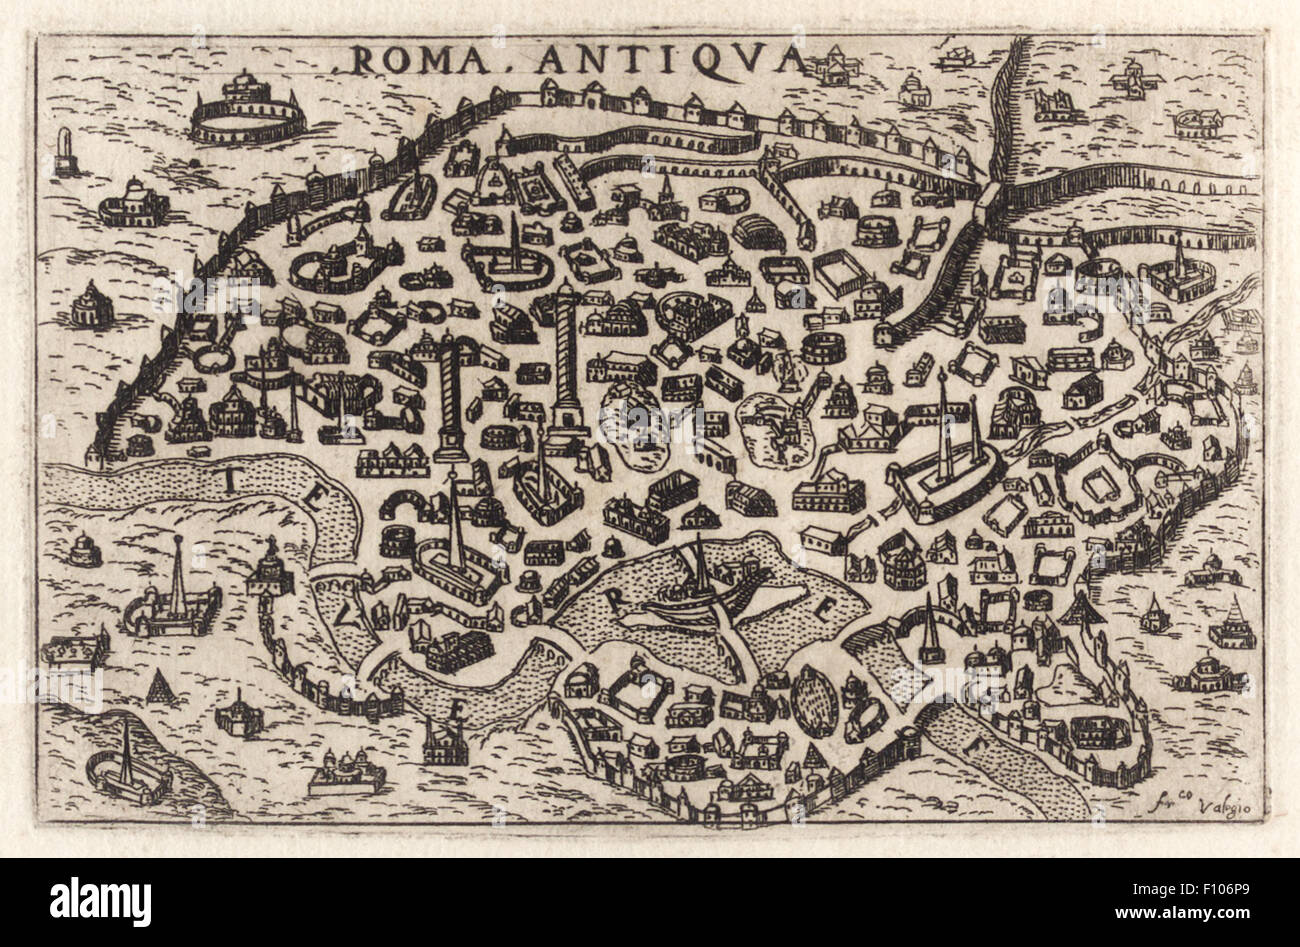 "Roma Antiqva" Ansicht von Rom ca. 1580 graviert und von Francesco Valesio (ca. 1560-1640) unterzeichnet. Siehe Beschreibung für mehr Informationen. Stockfoto